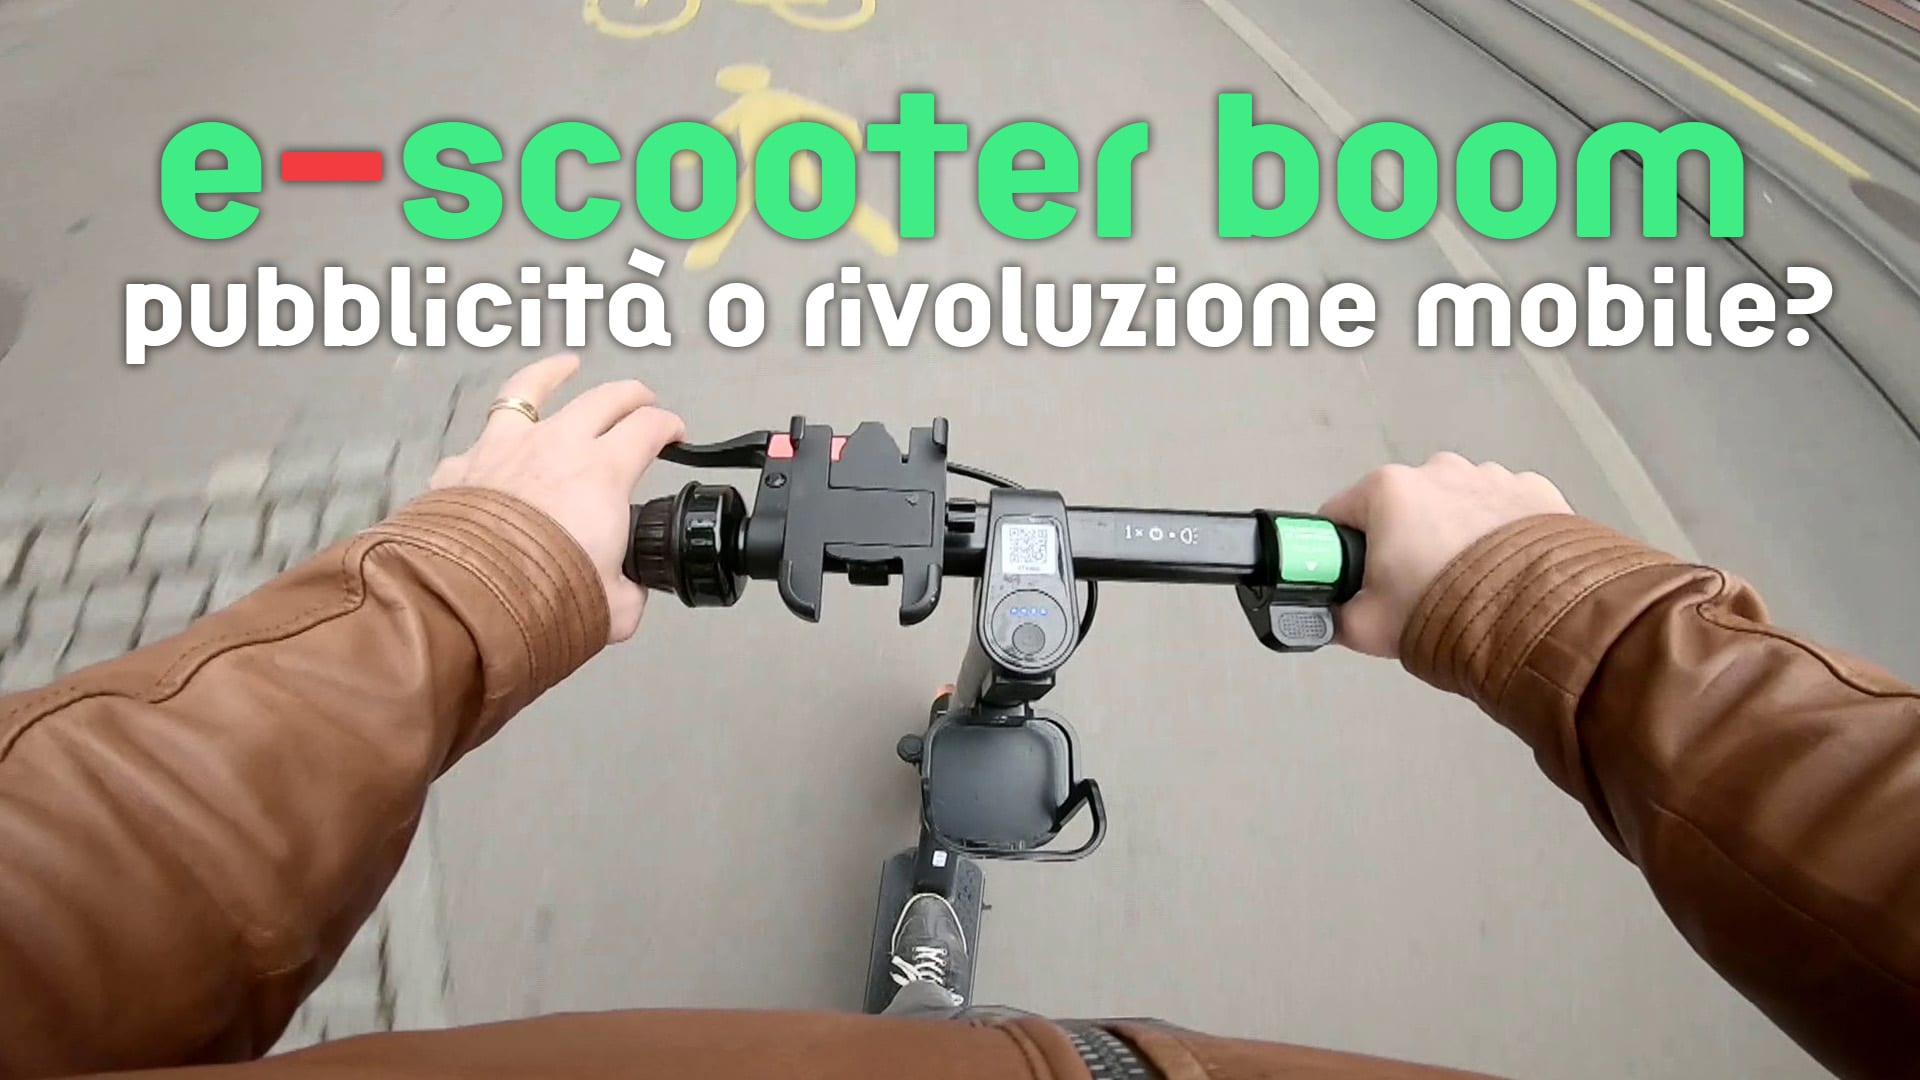 E-scooter boom: pubblicità o rivoluzione mobile?